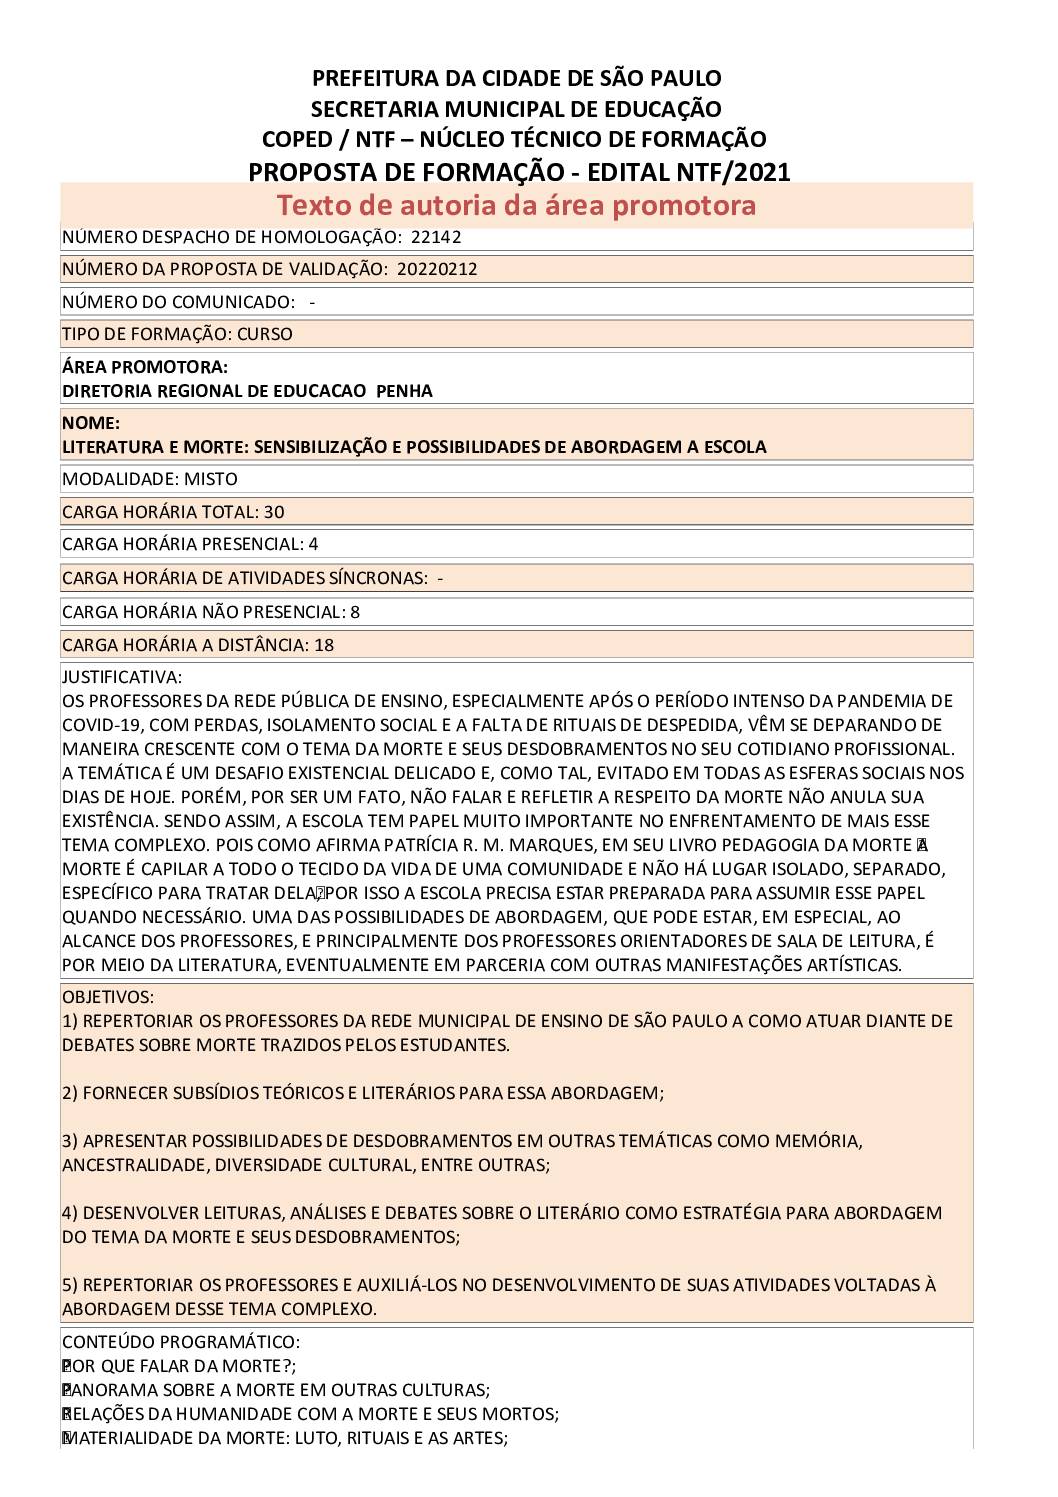 PDF com informações sobre o curso: A LITERATURA COMO SENSIBILIZAÇÃO E POSSIBILIDADE DE LIDAR COM O LUTO NA ESCOLA